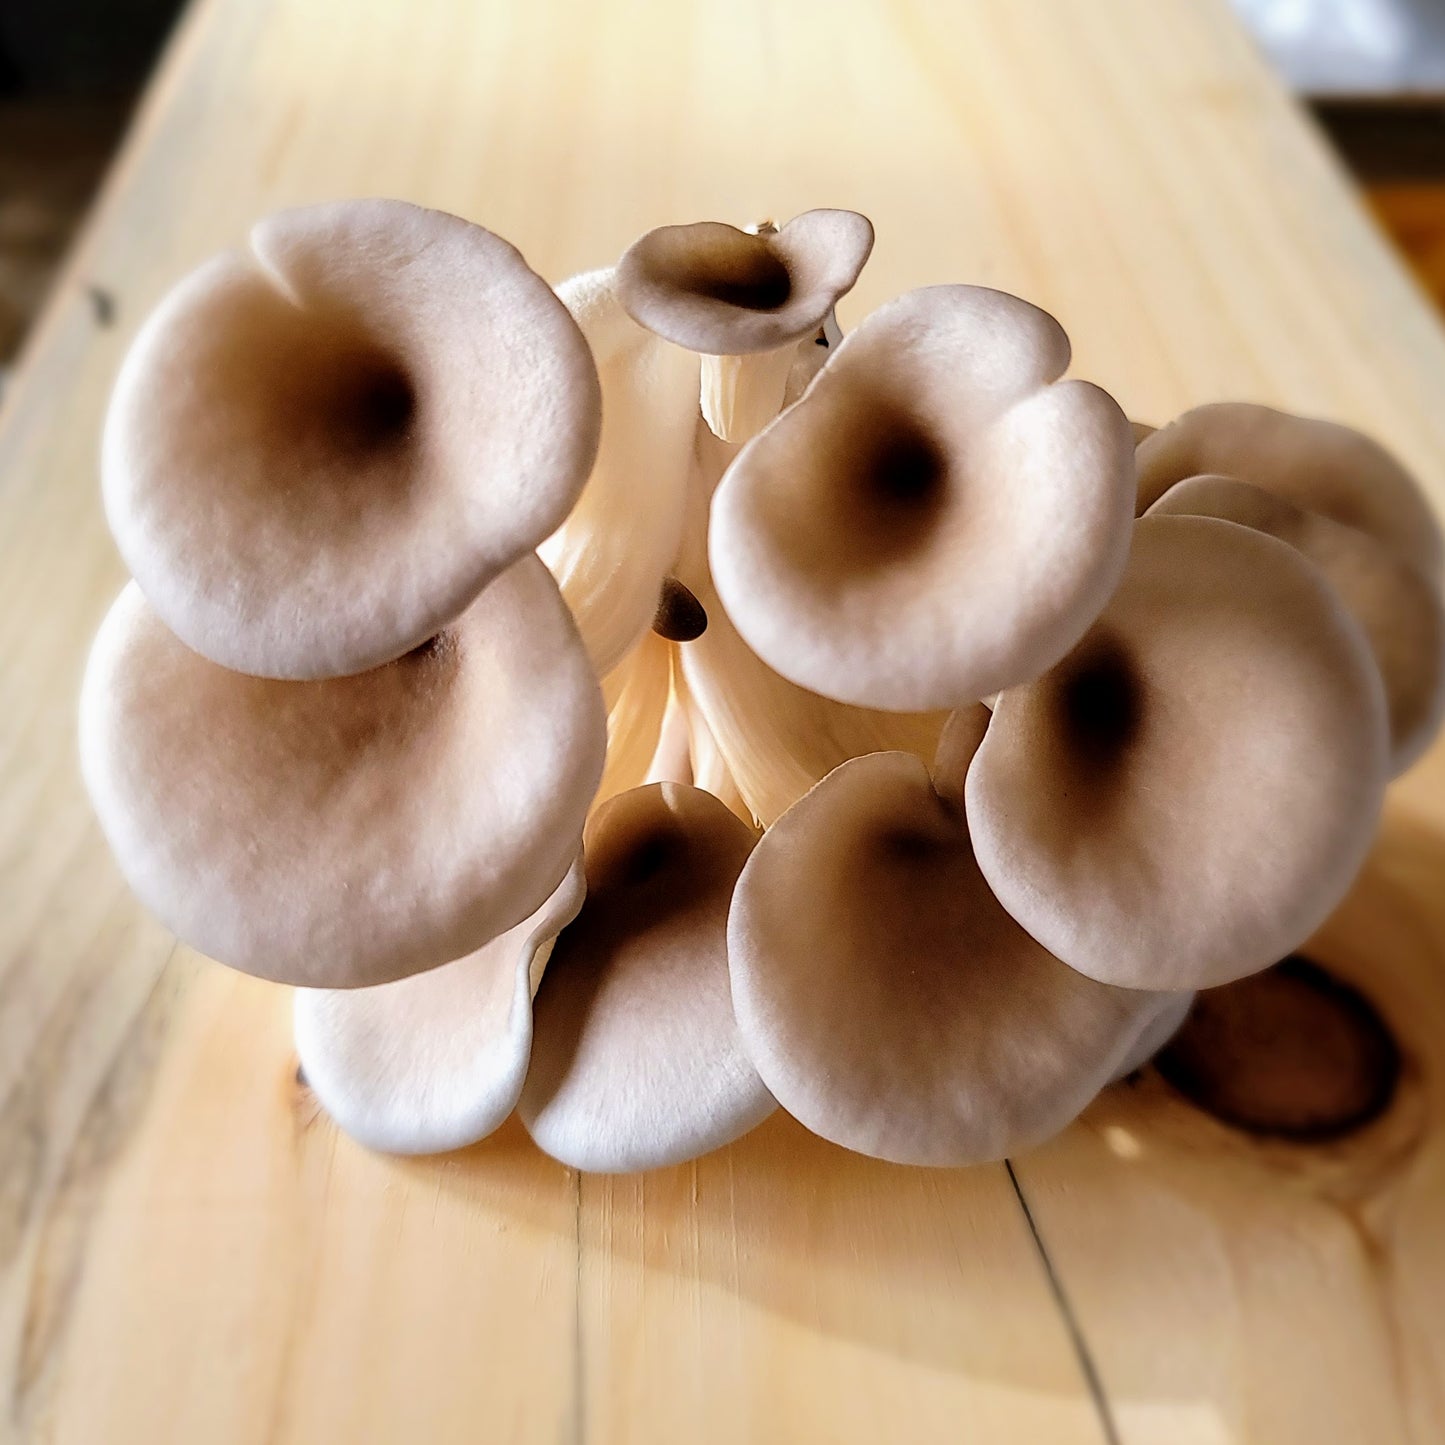 Mushroom - Oyster